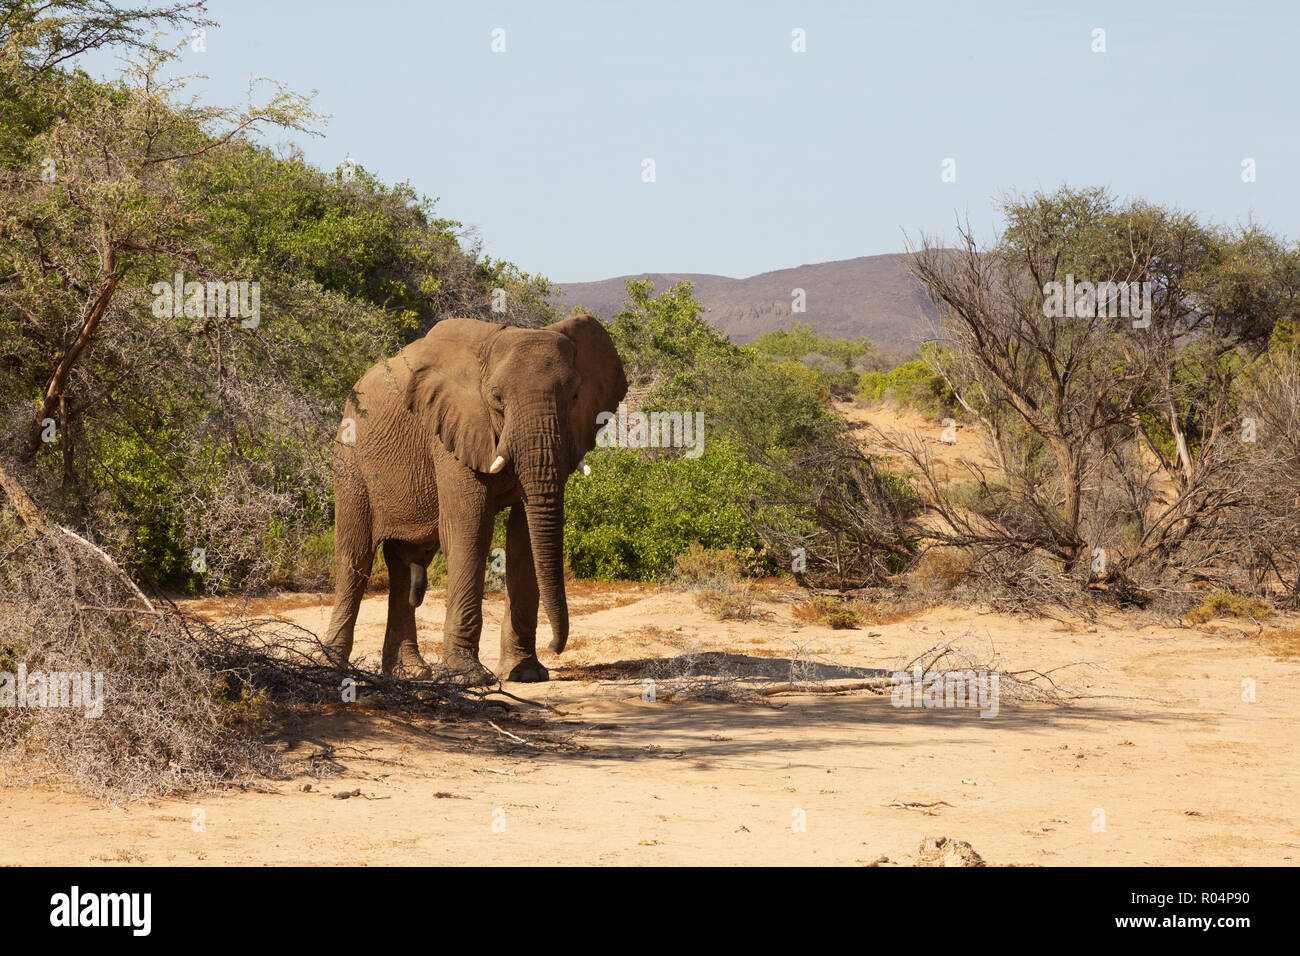 Elephant namibia - a single male adult desert elephant, Haub river bed, Damaraland, Namibia Africa Stock Photo